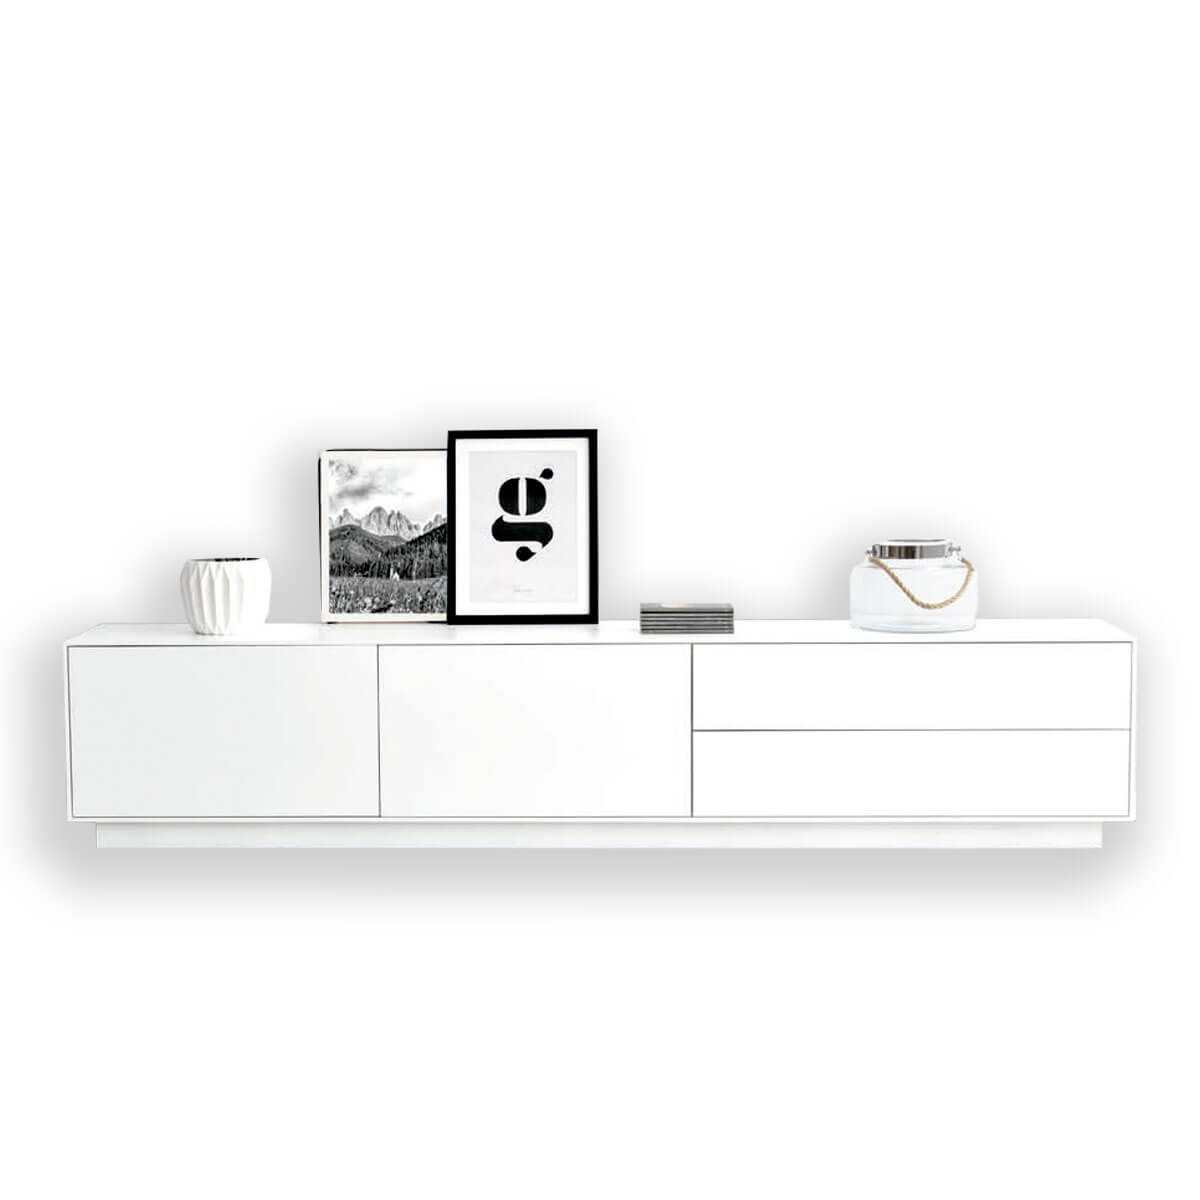 Mueble tv blanco y madera - Artikalia - Muebles de diseño